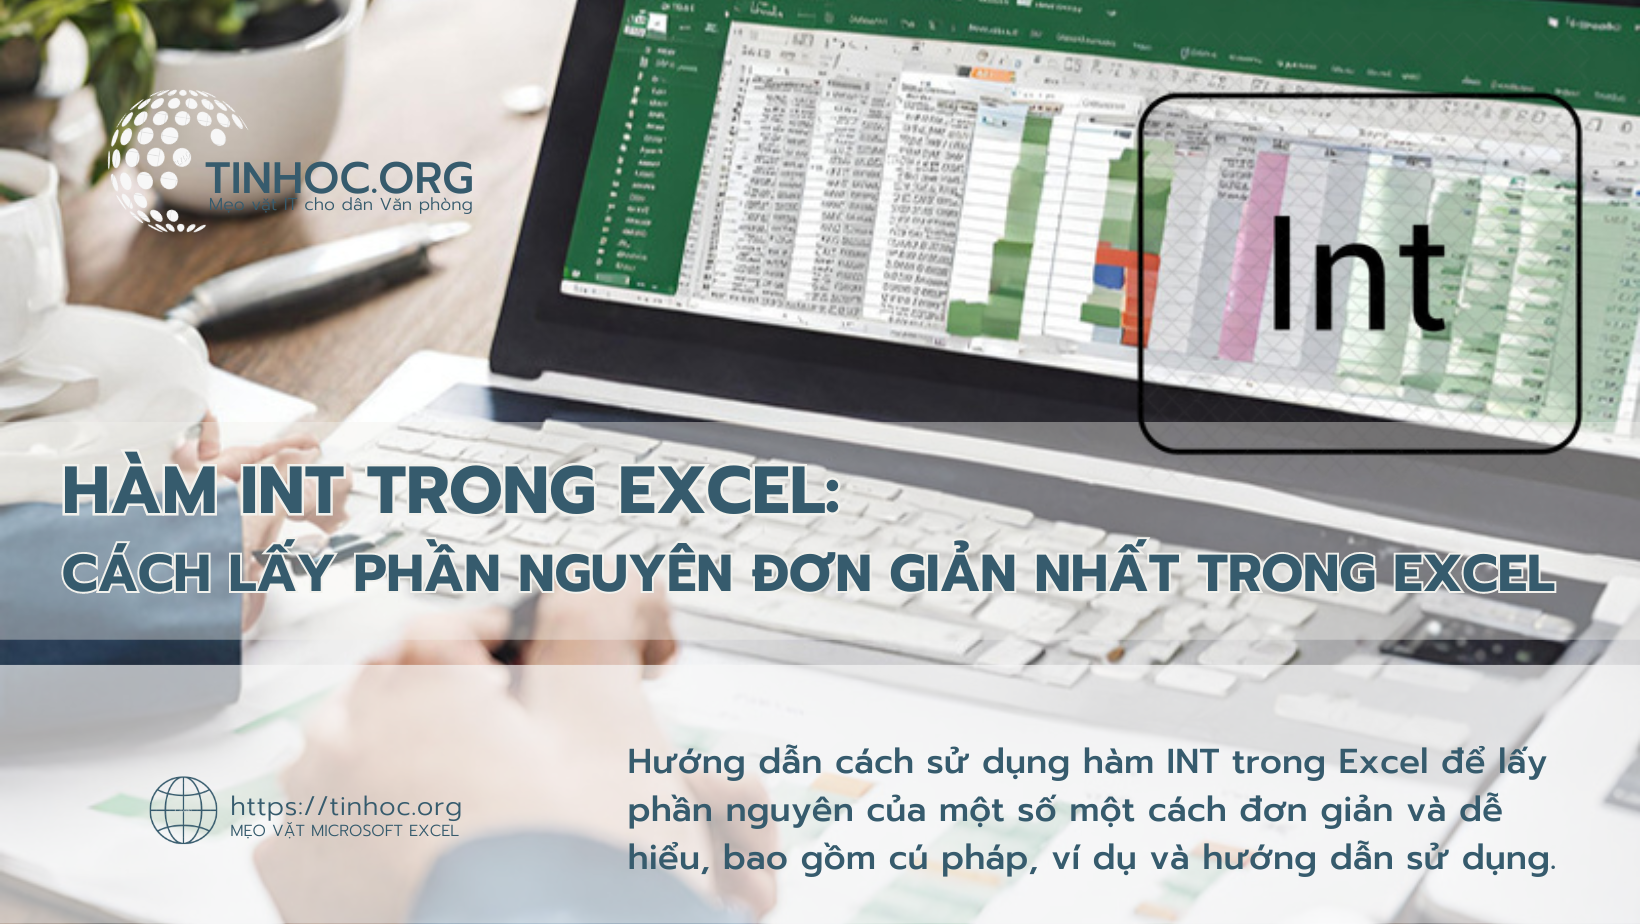 Hướng dẫn cách sử dụng hàm INT trong Excel để lấy phần nguyên của một số một cách đơn giản và dễ hiểu, bao gồm cú pháp, ví dụ và hướng dẫn sử dụng.